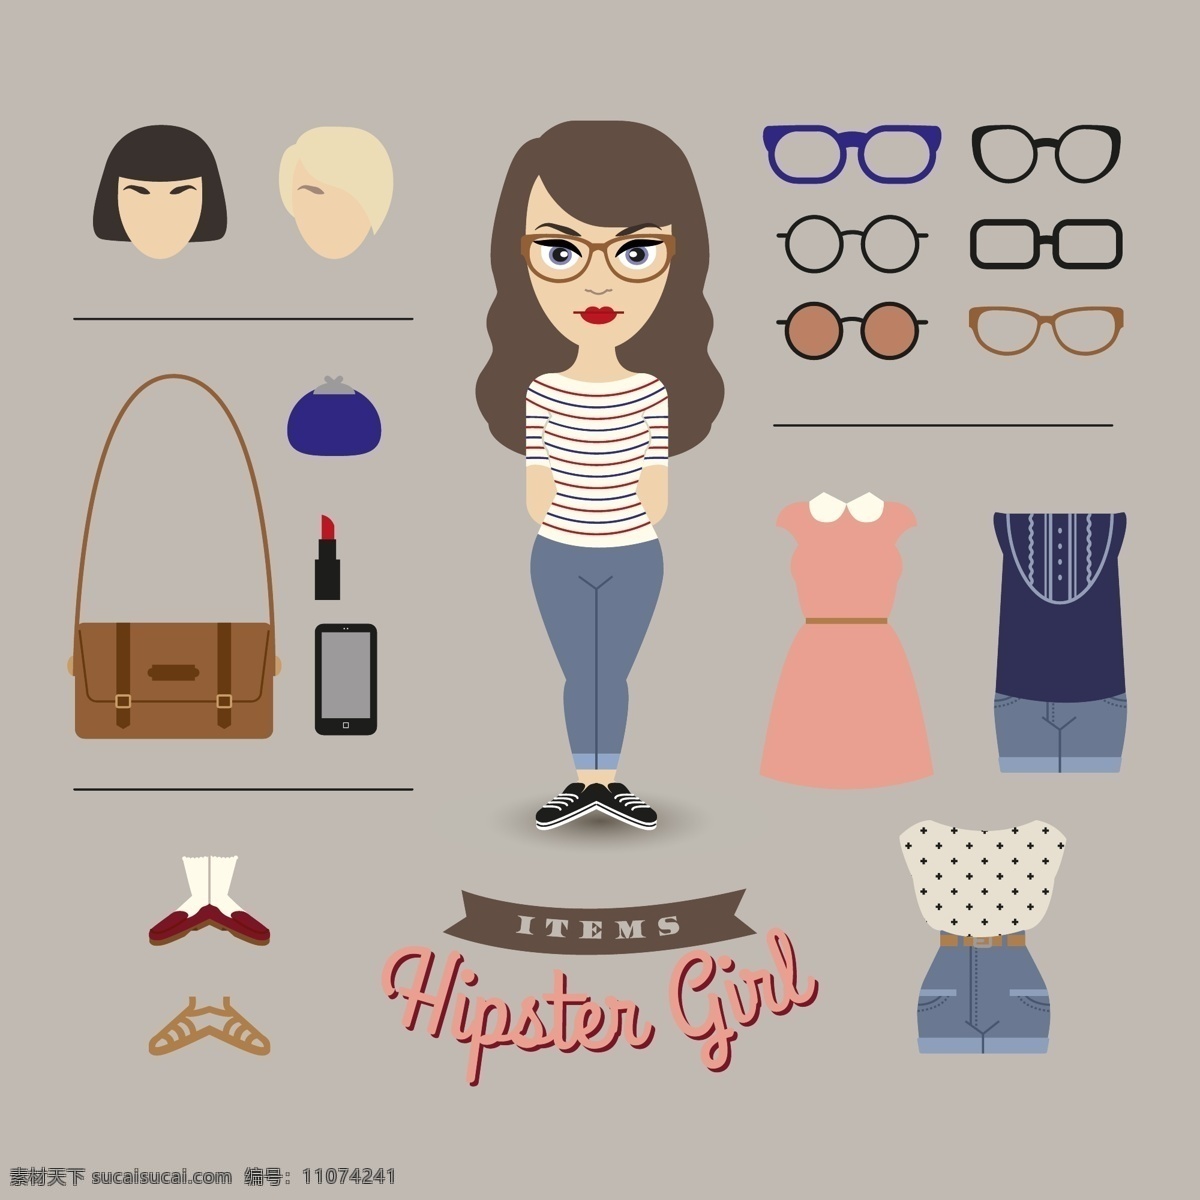 女性 女性用品 包 发型 女人 眼镜 衣服 矢量图 矢量人物